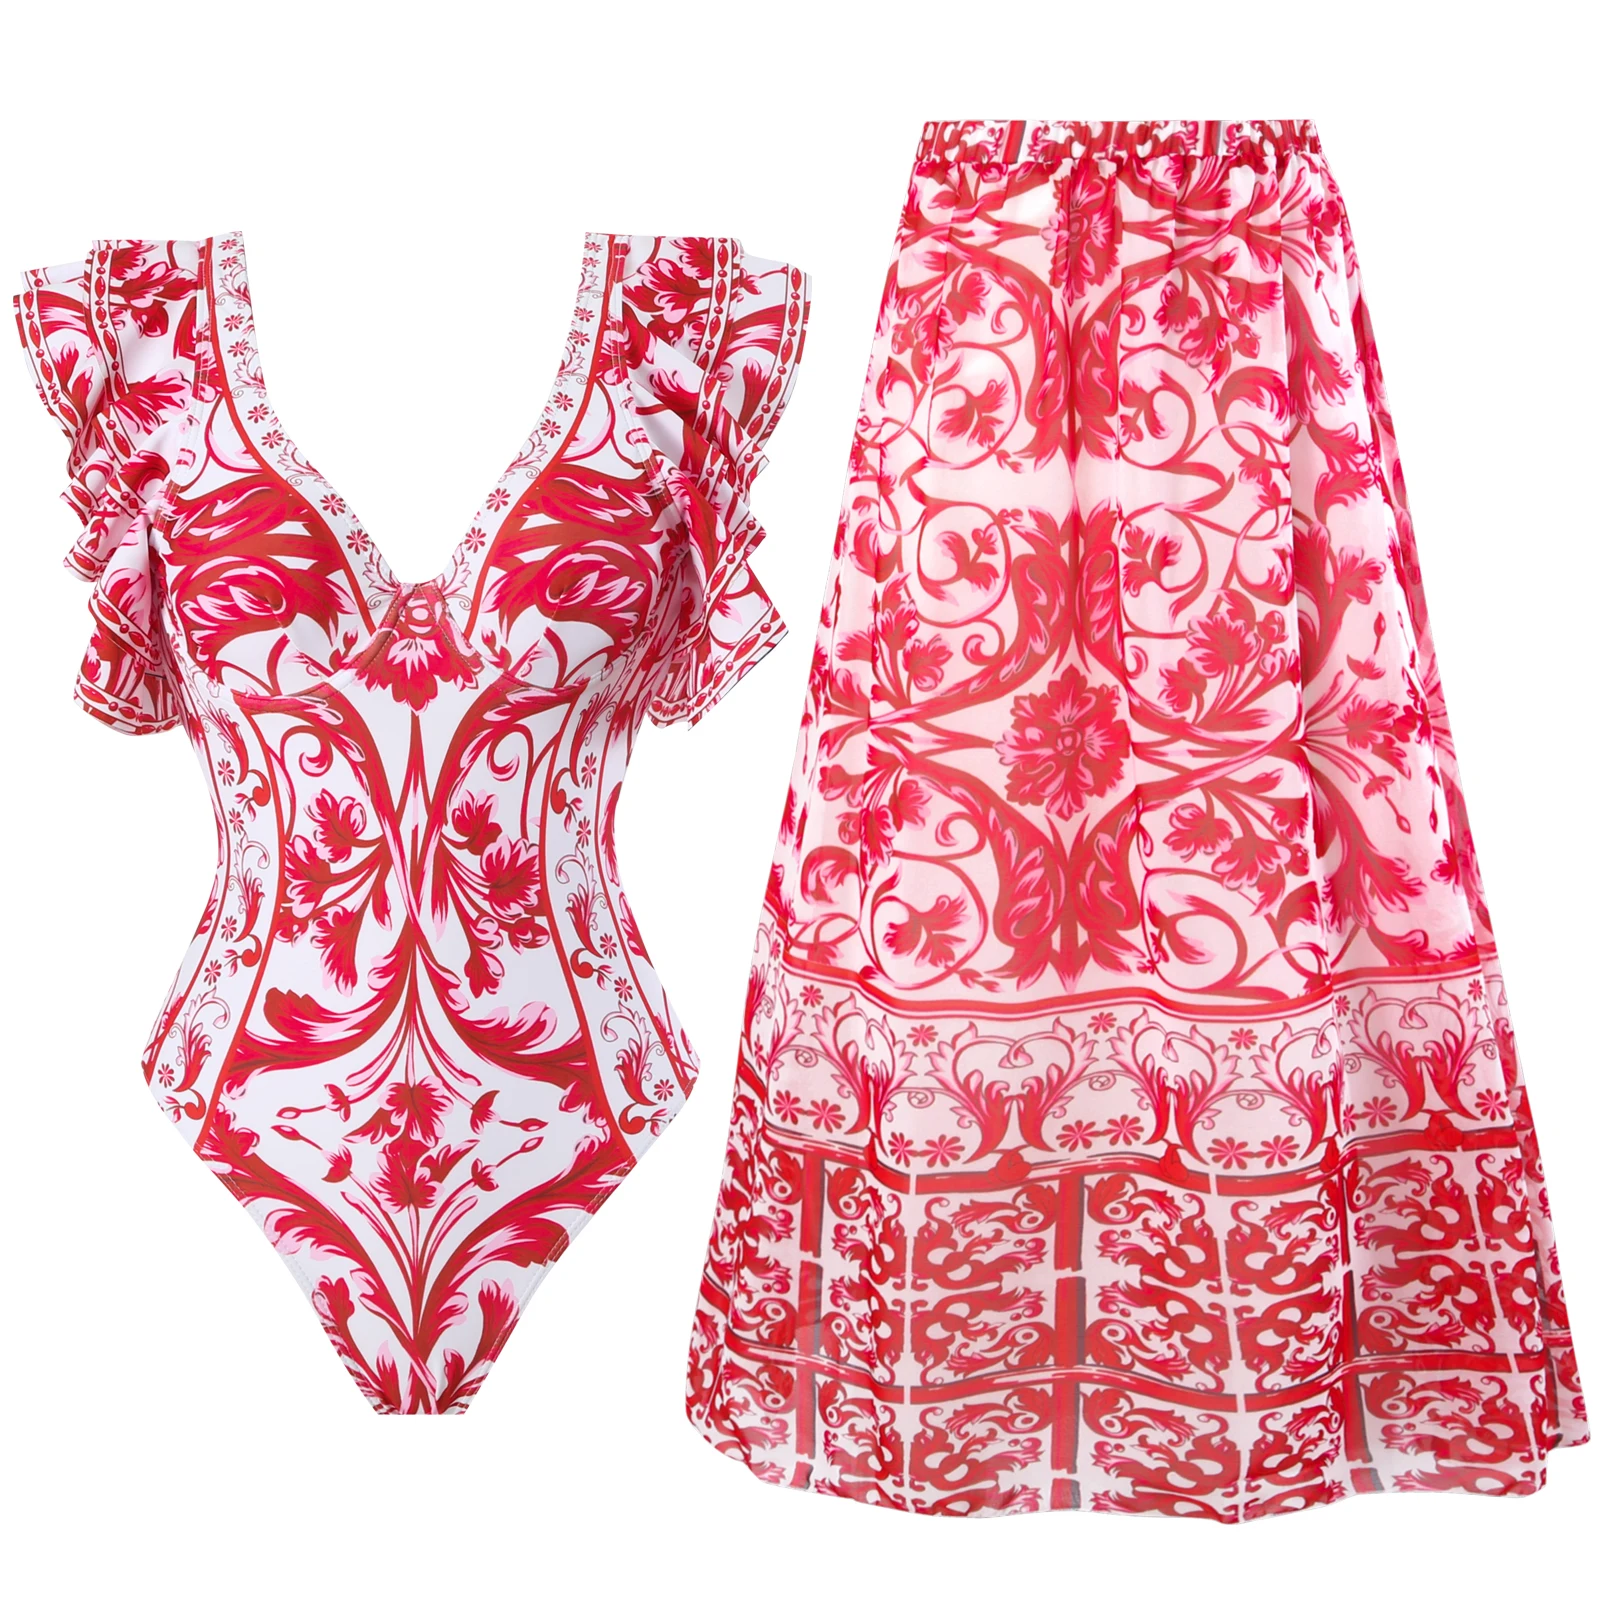 

2024 New 2-Piece Women Bikini Set Push Up Floral Printed Ruffle Bikinis Strappy Bandage Swimwear Brazilian Biquini Bathing Suit